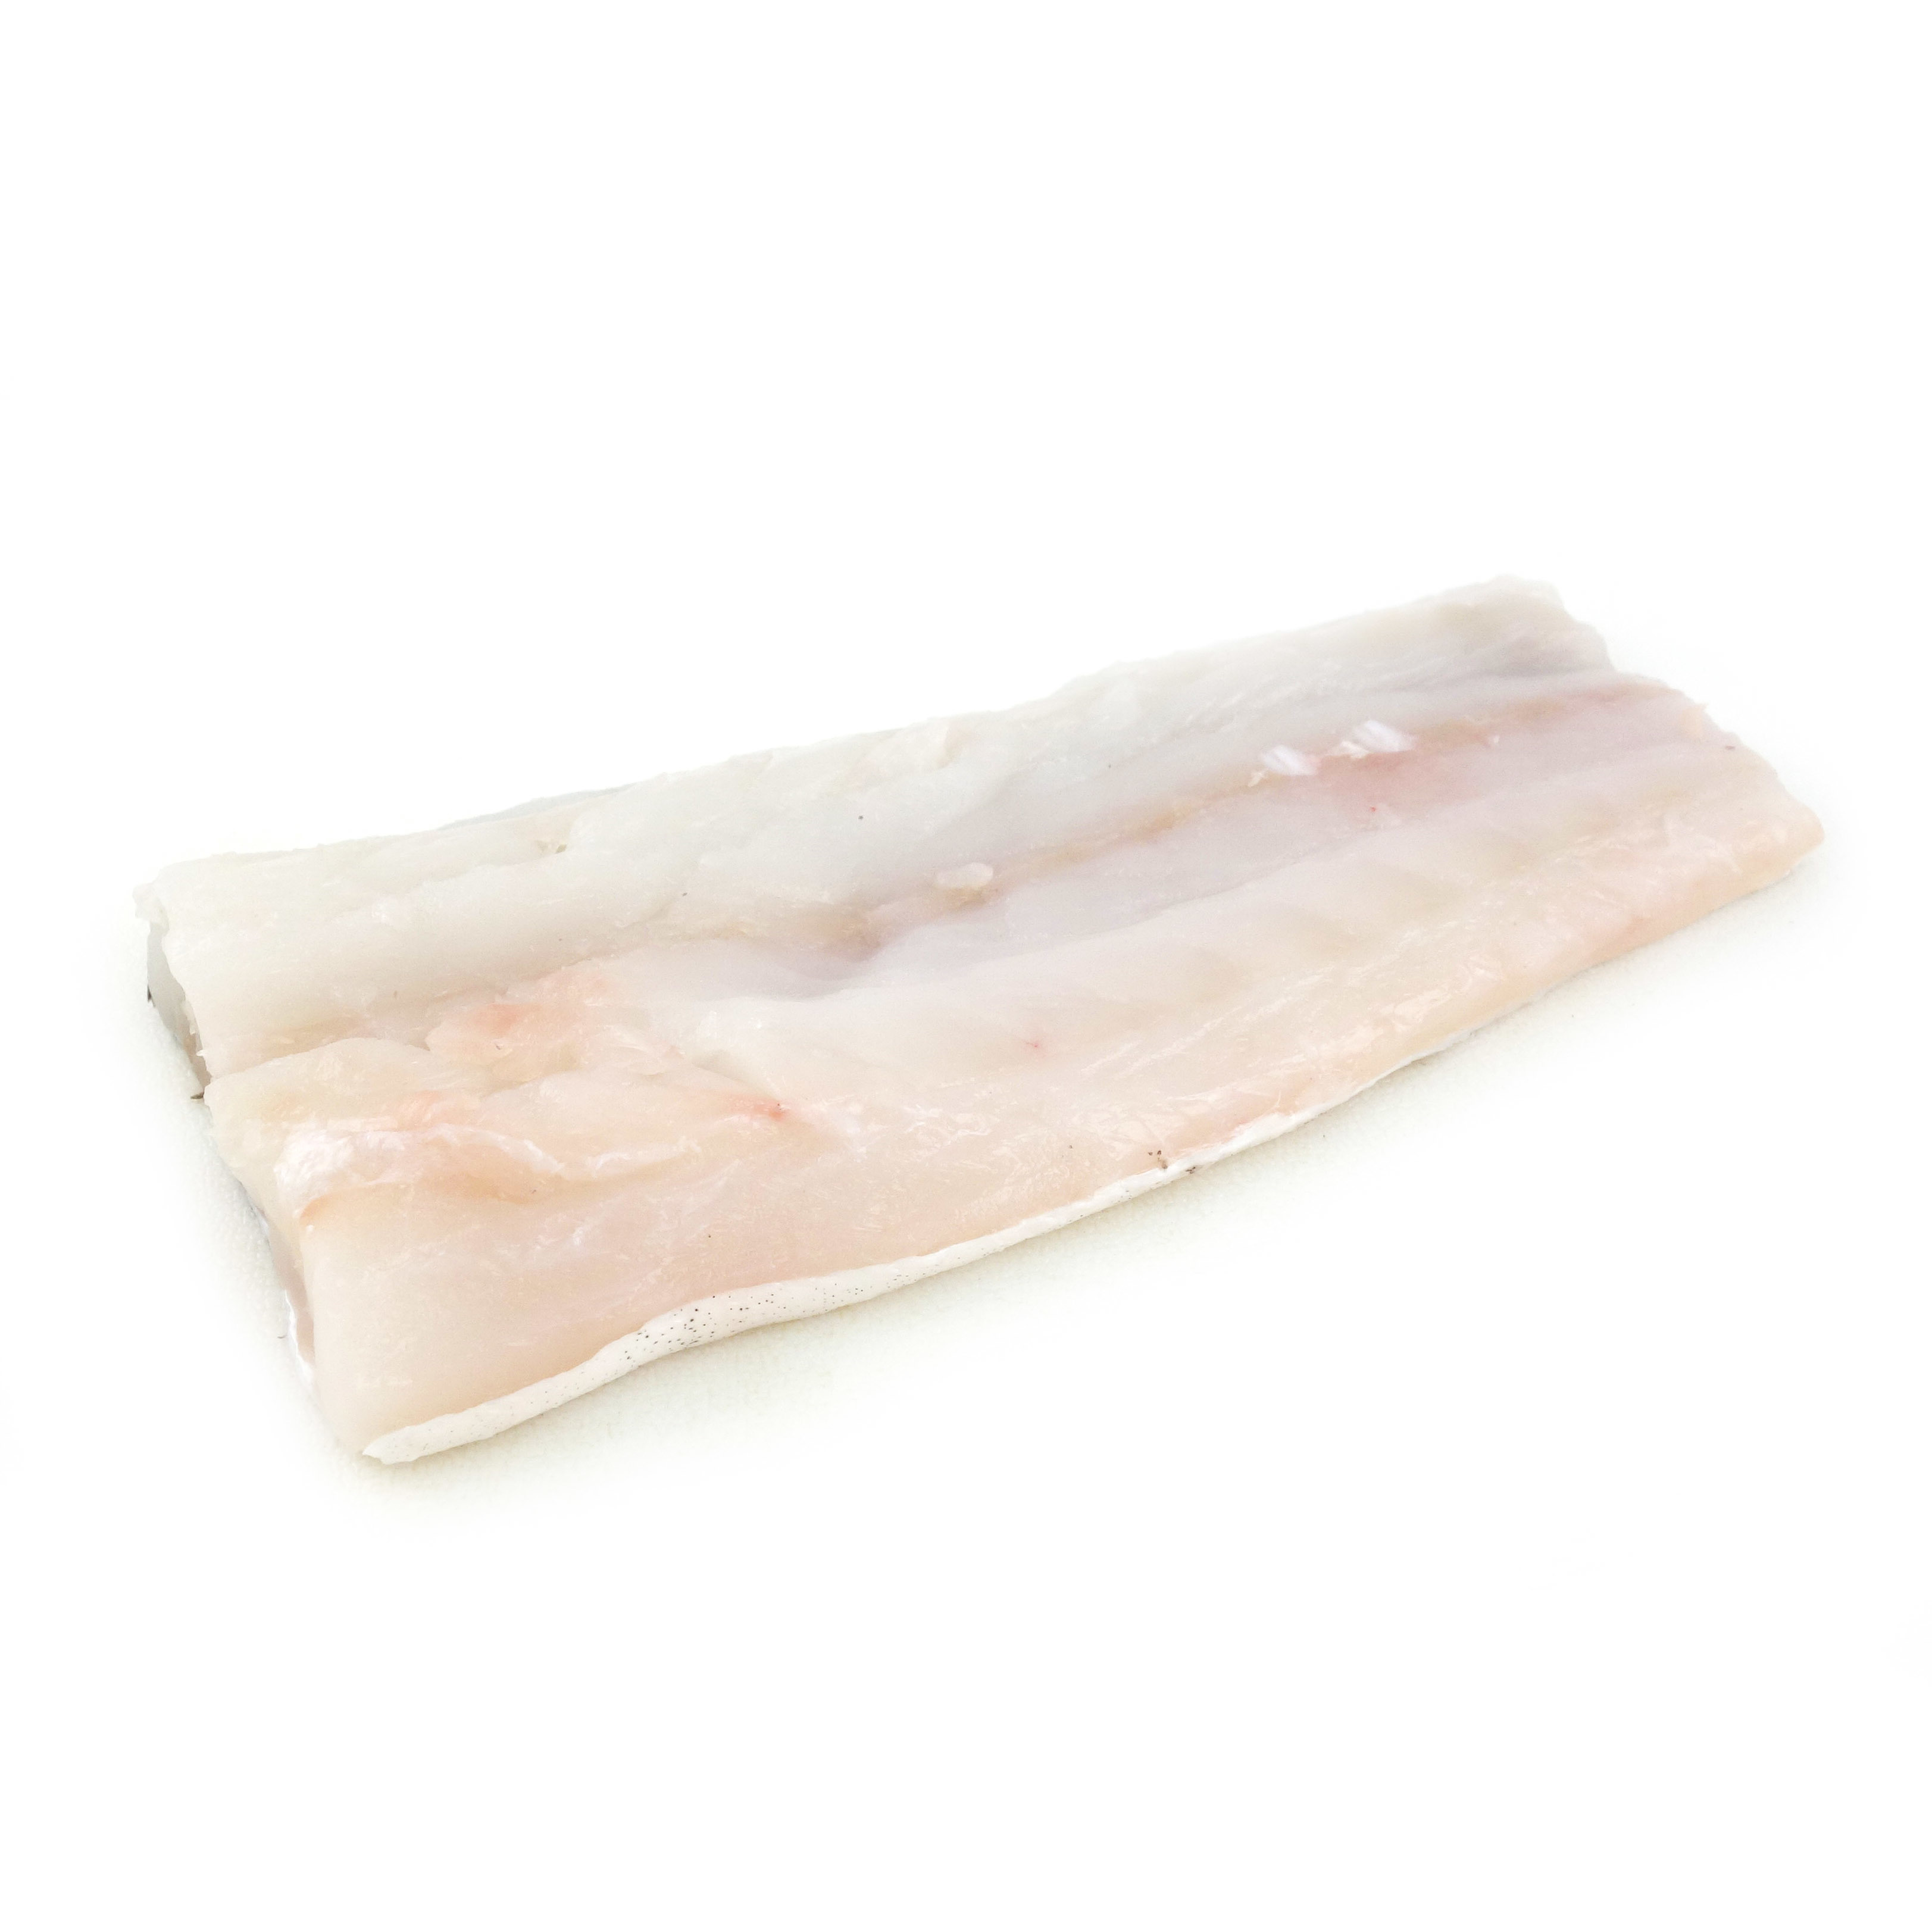 急凍法國野生鱈魚柳